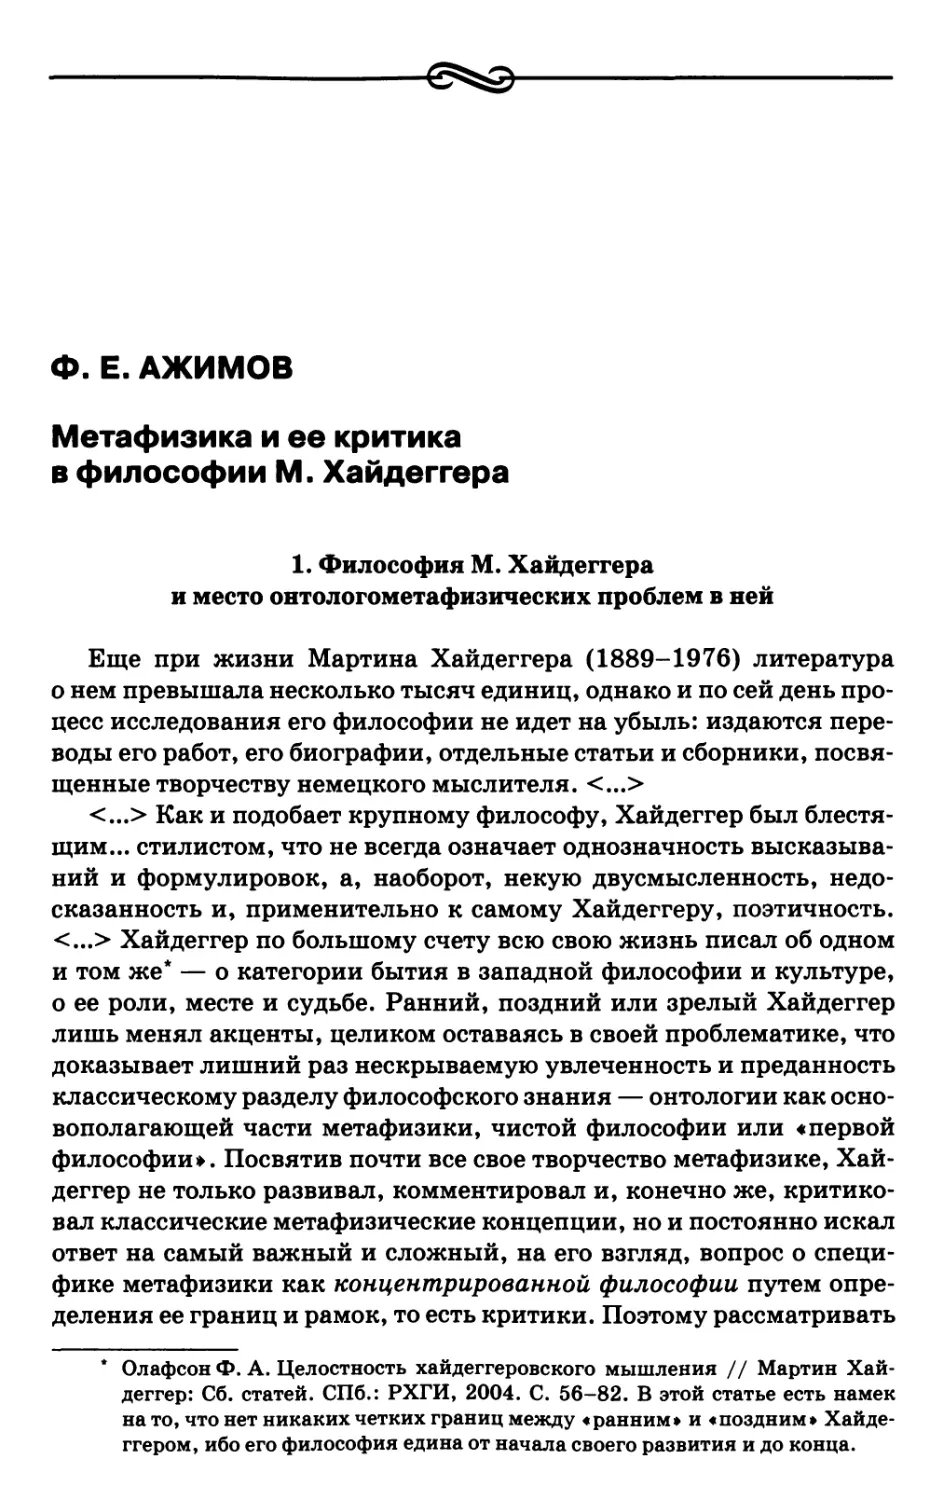 Ажимов Ф.Е. Метафизика и ее критика в философии М. Хайдеггера